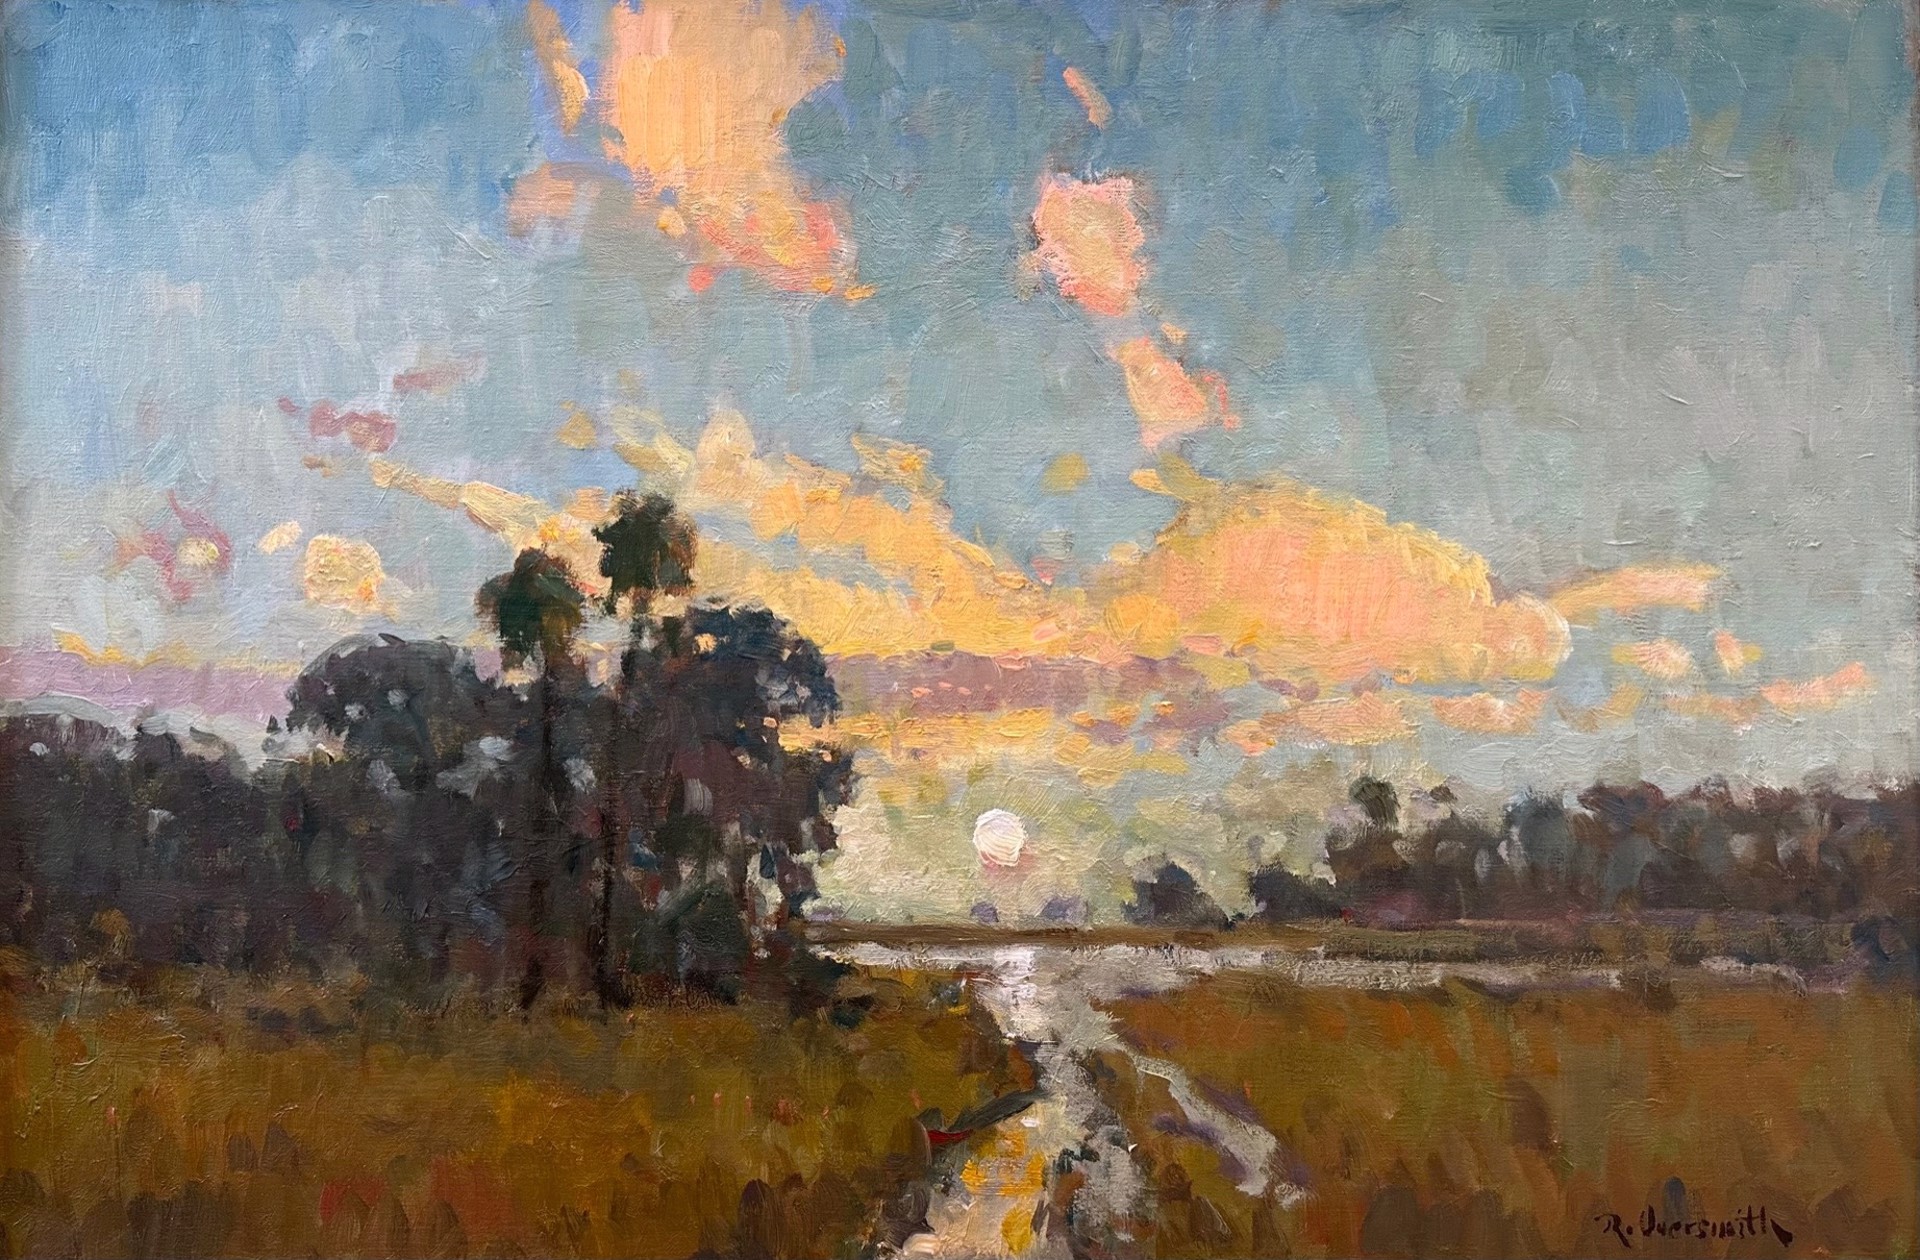 Moonrise Marsh by Richard Oversmith